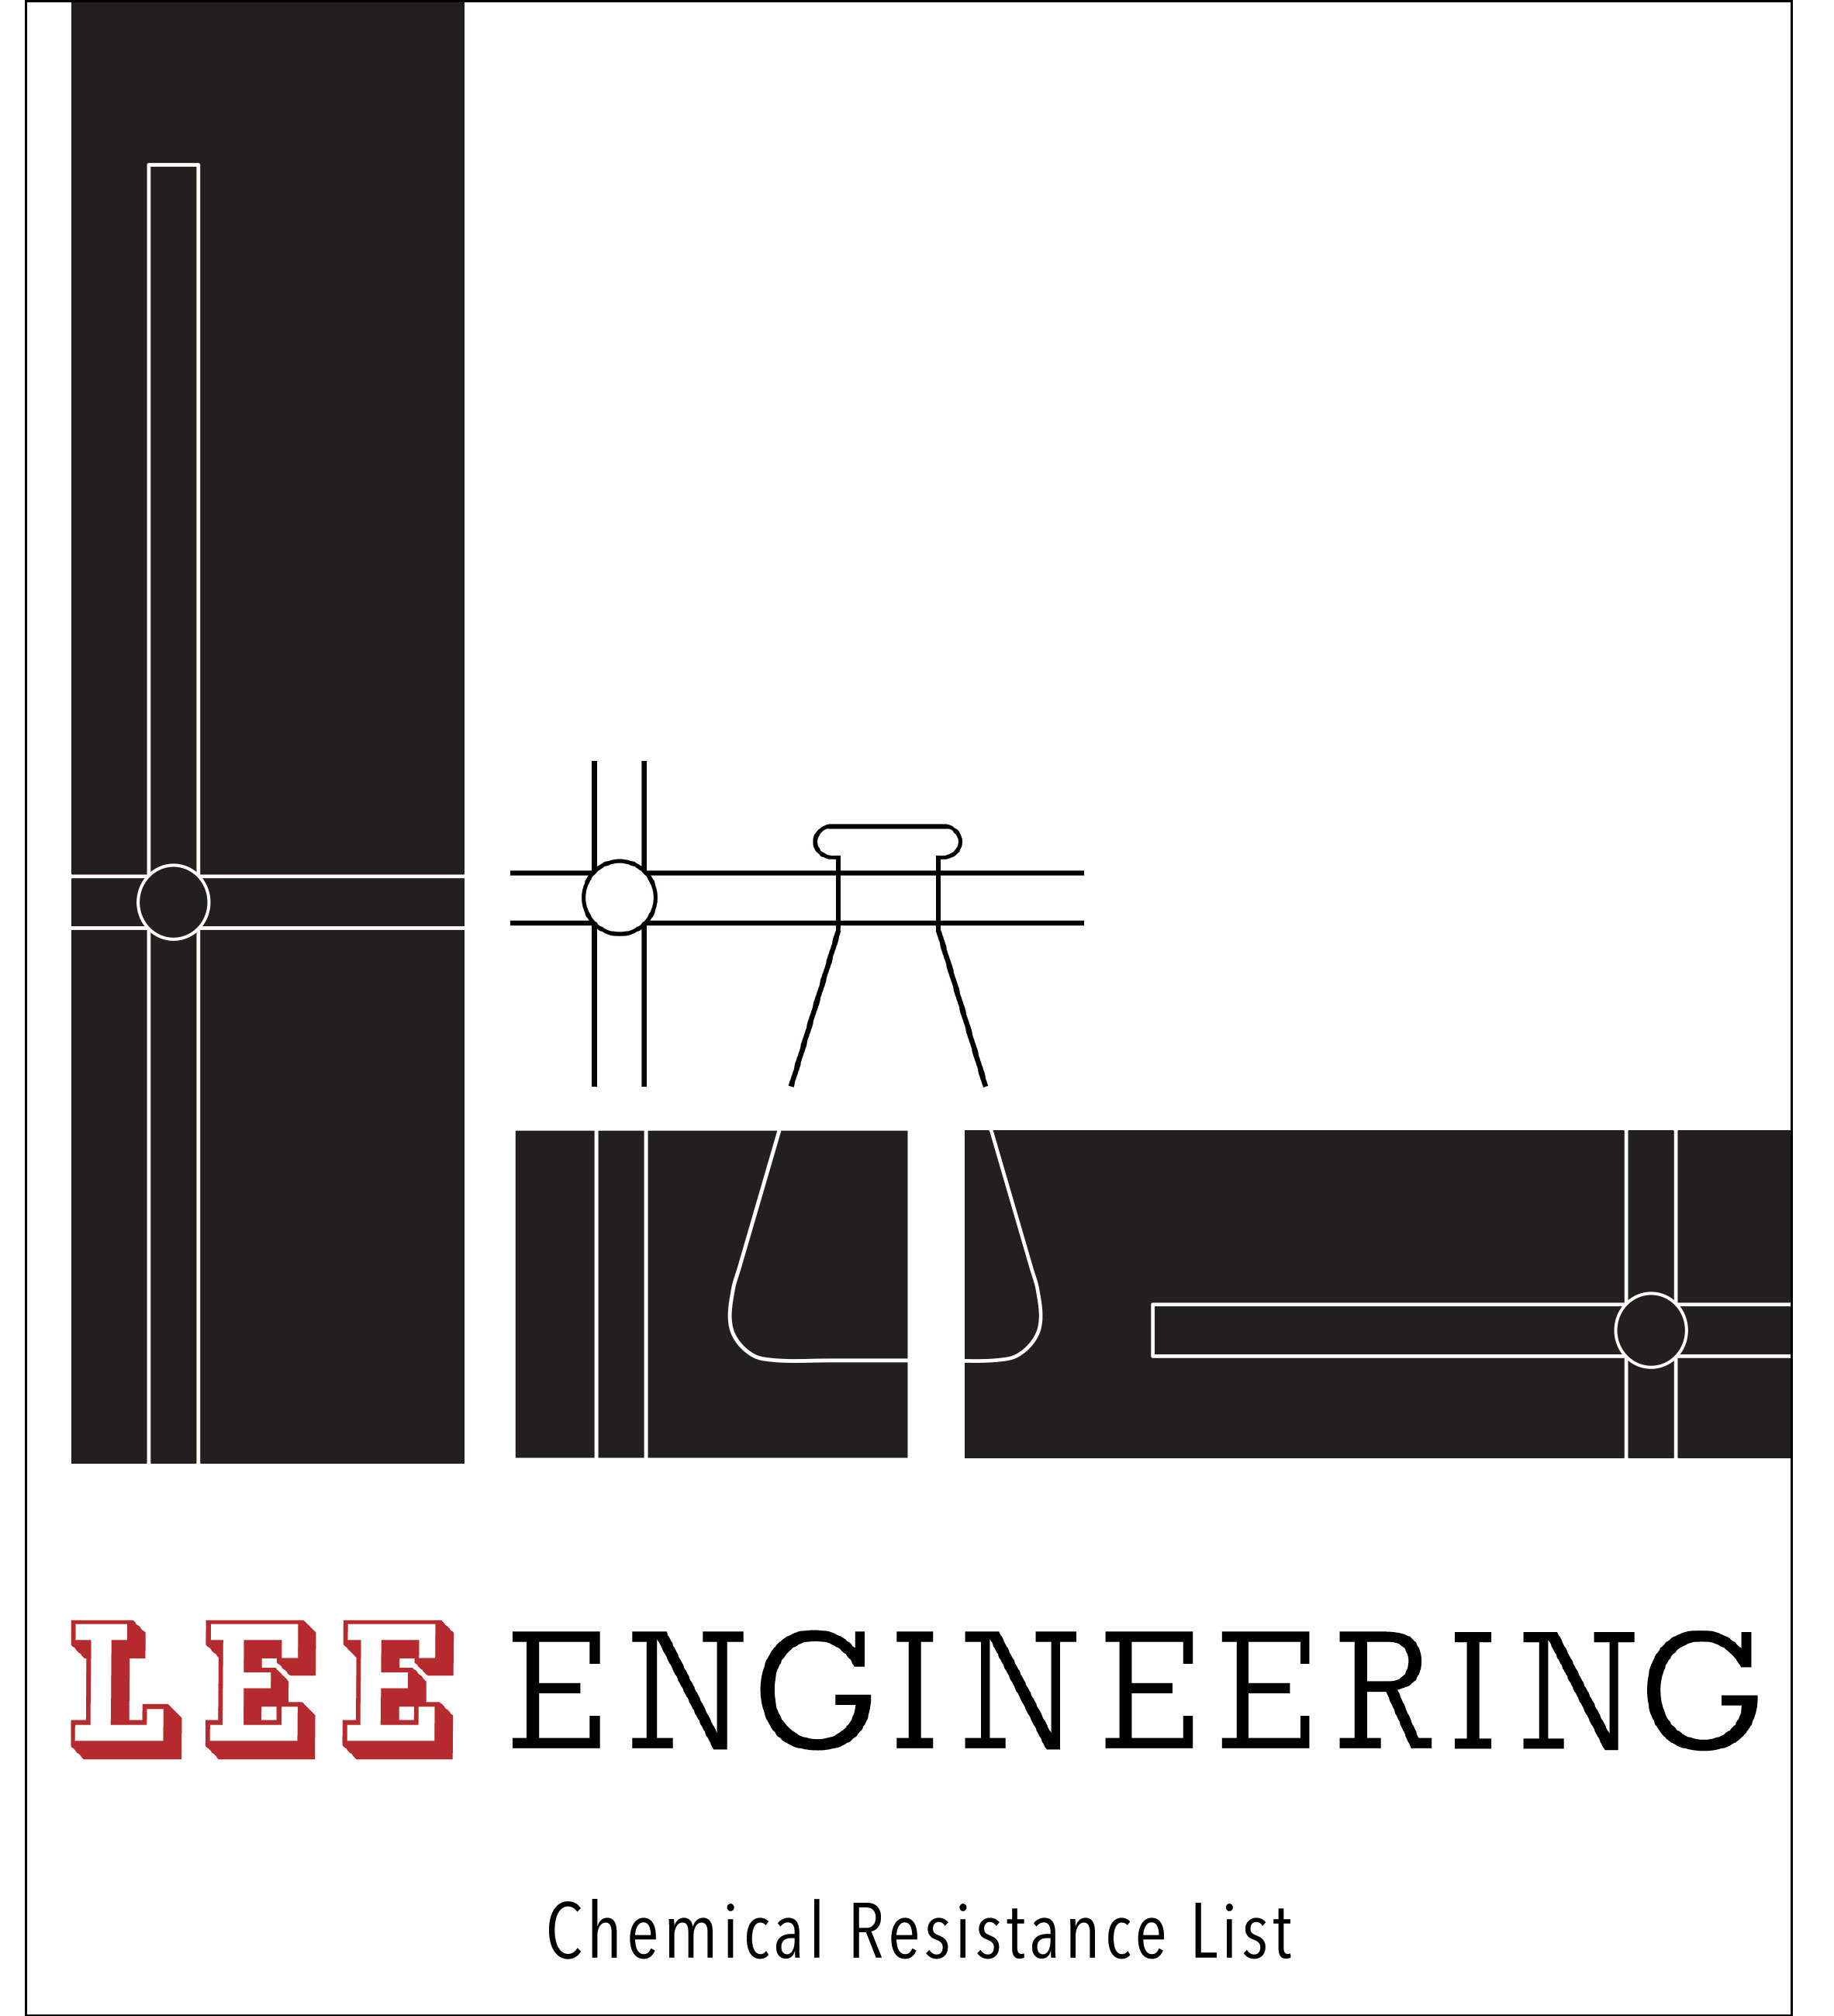 Lee Engineering Chemical Resistance List